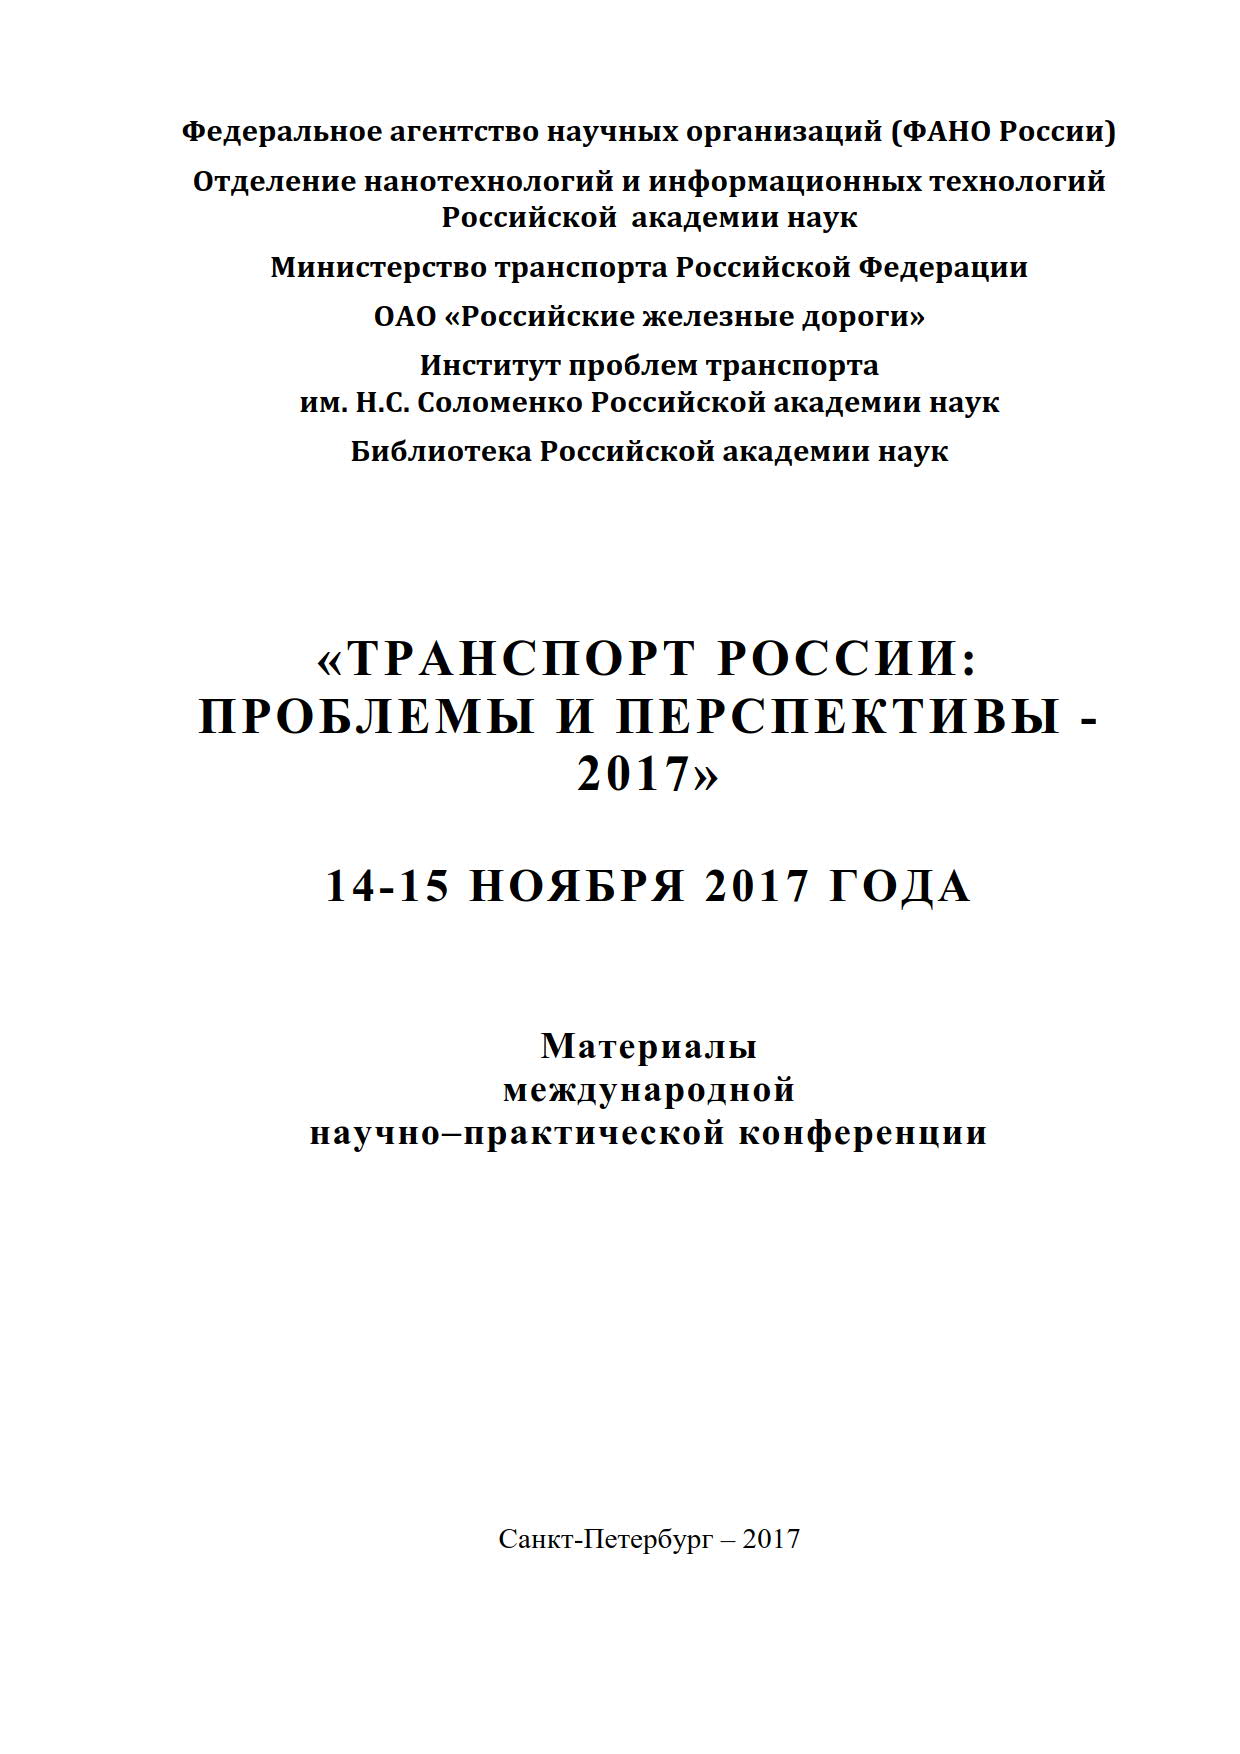 Транспорт России, проблемы и перспективы 